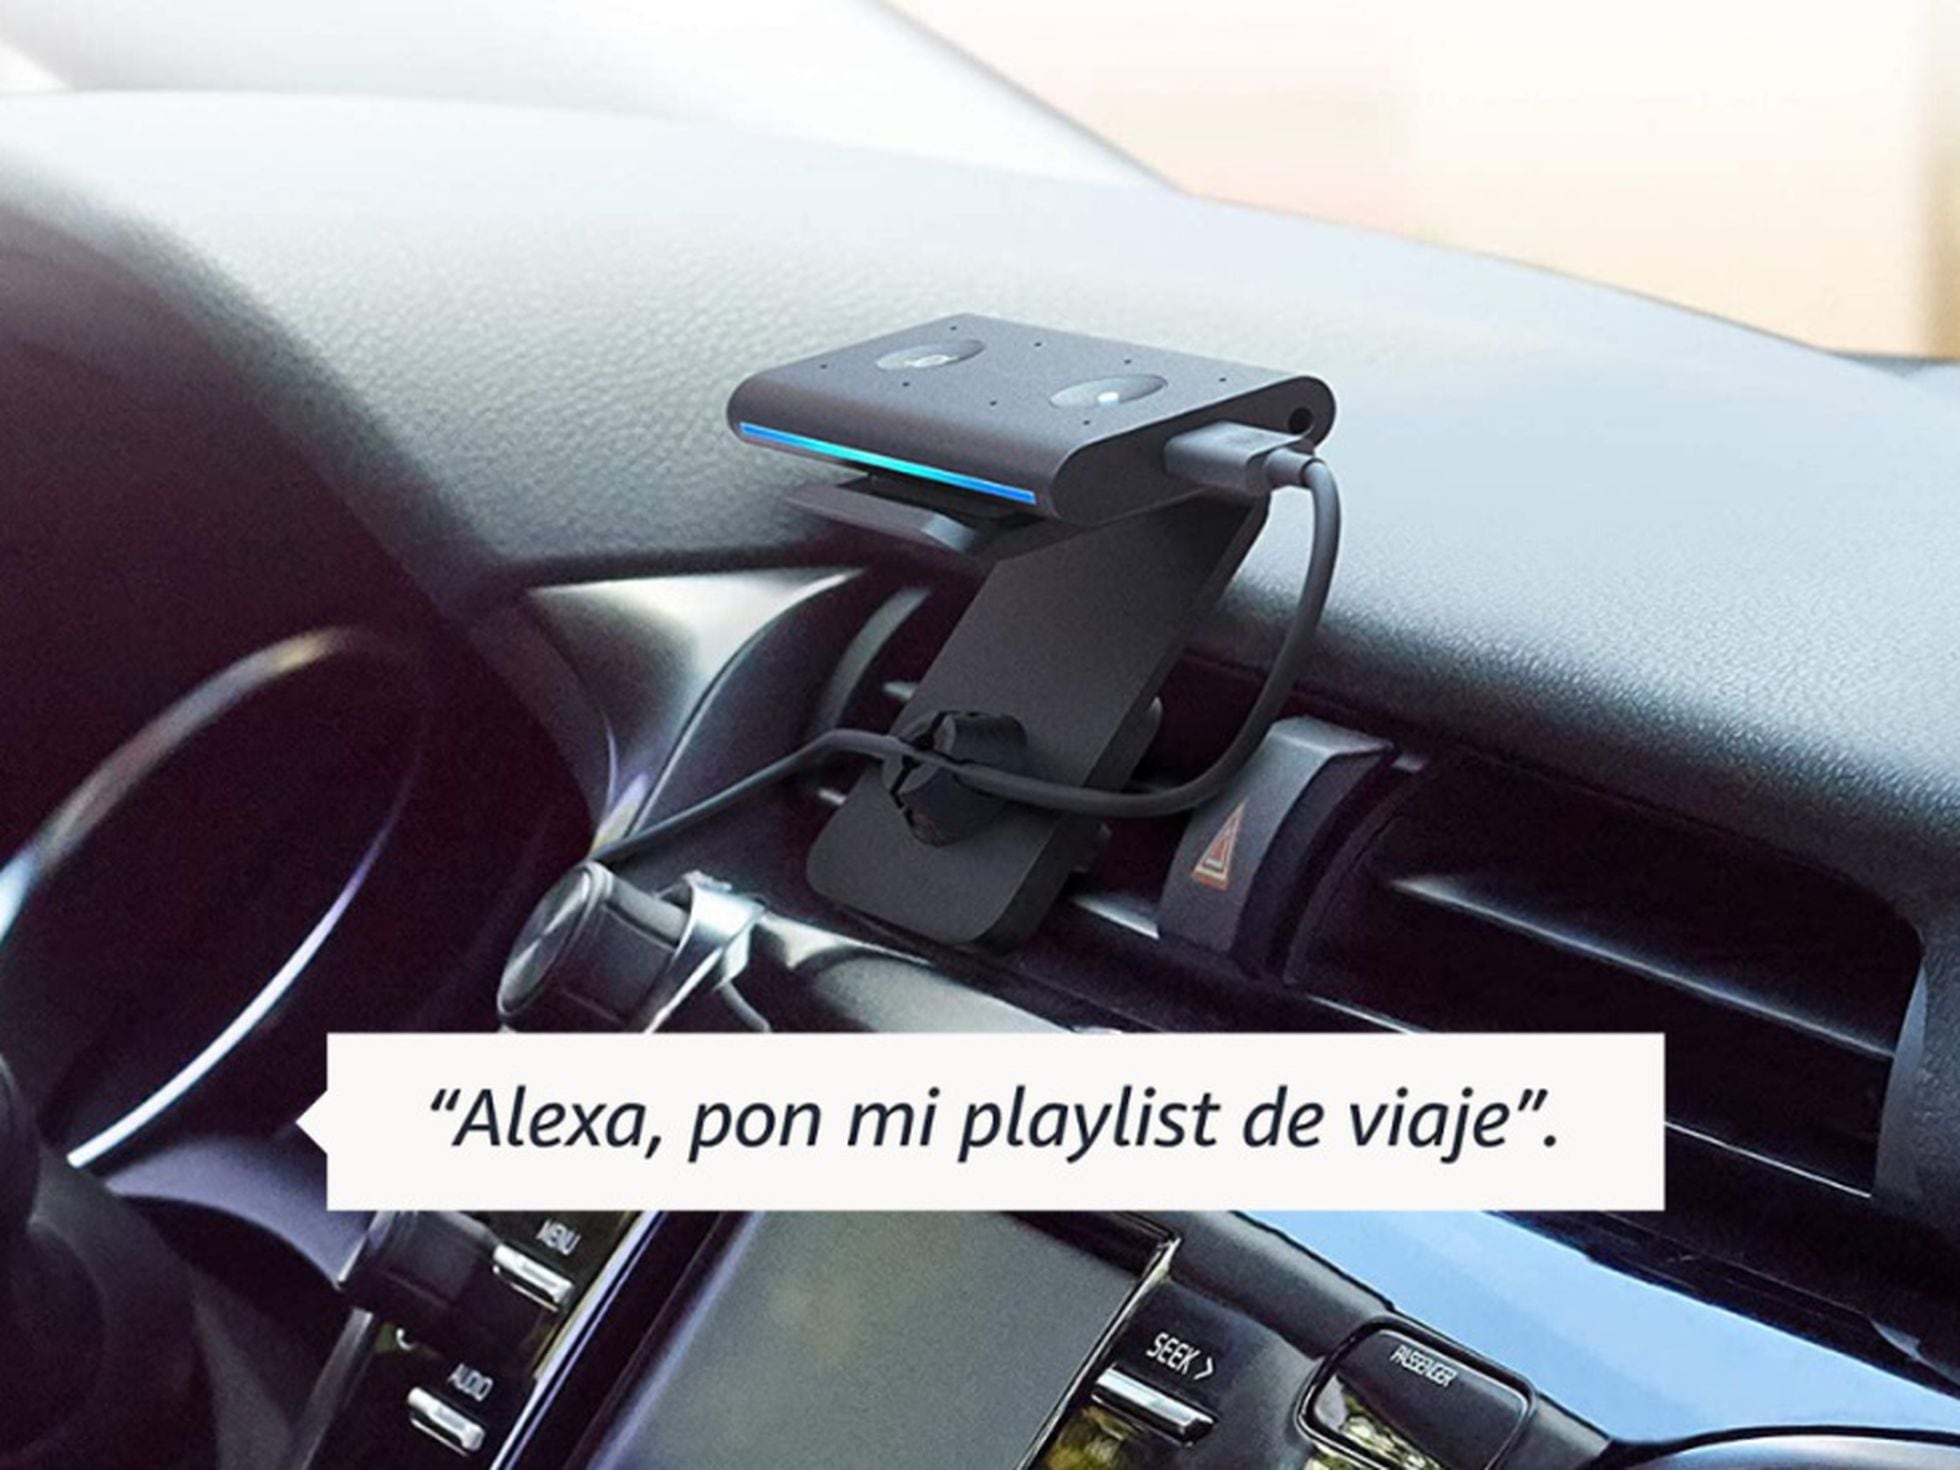 Echo Auto, el dispositivo que traslada las ventajas de Alexa al  coche, iguala su precio mínimo histórico este 2021, Escaparate: compras y  ofertas